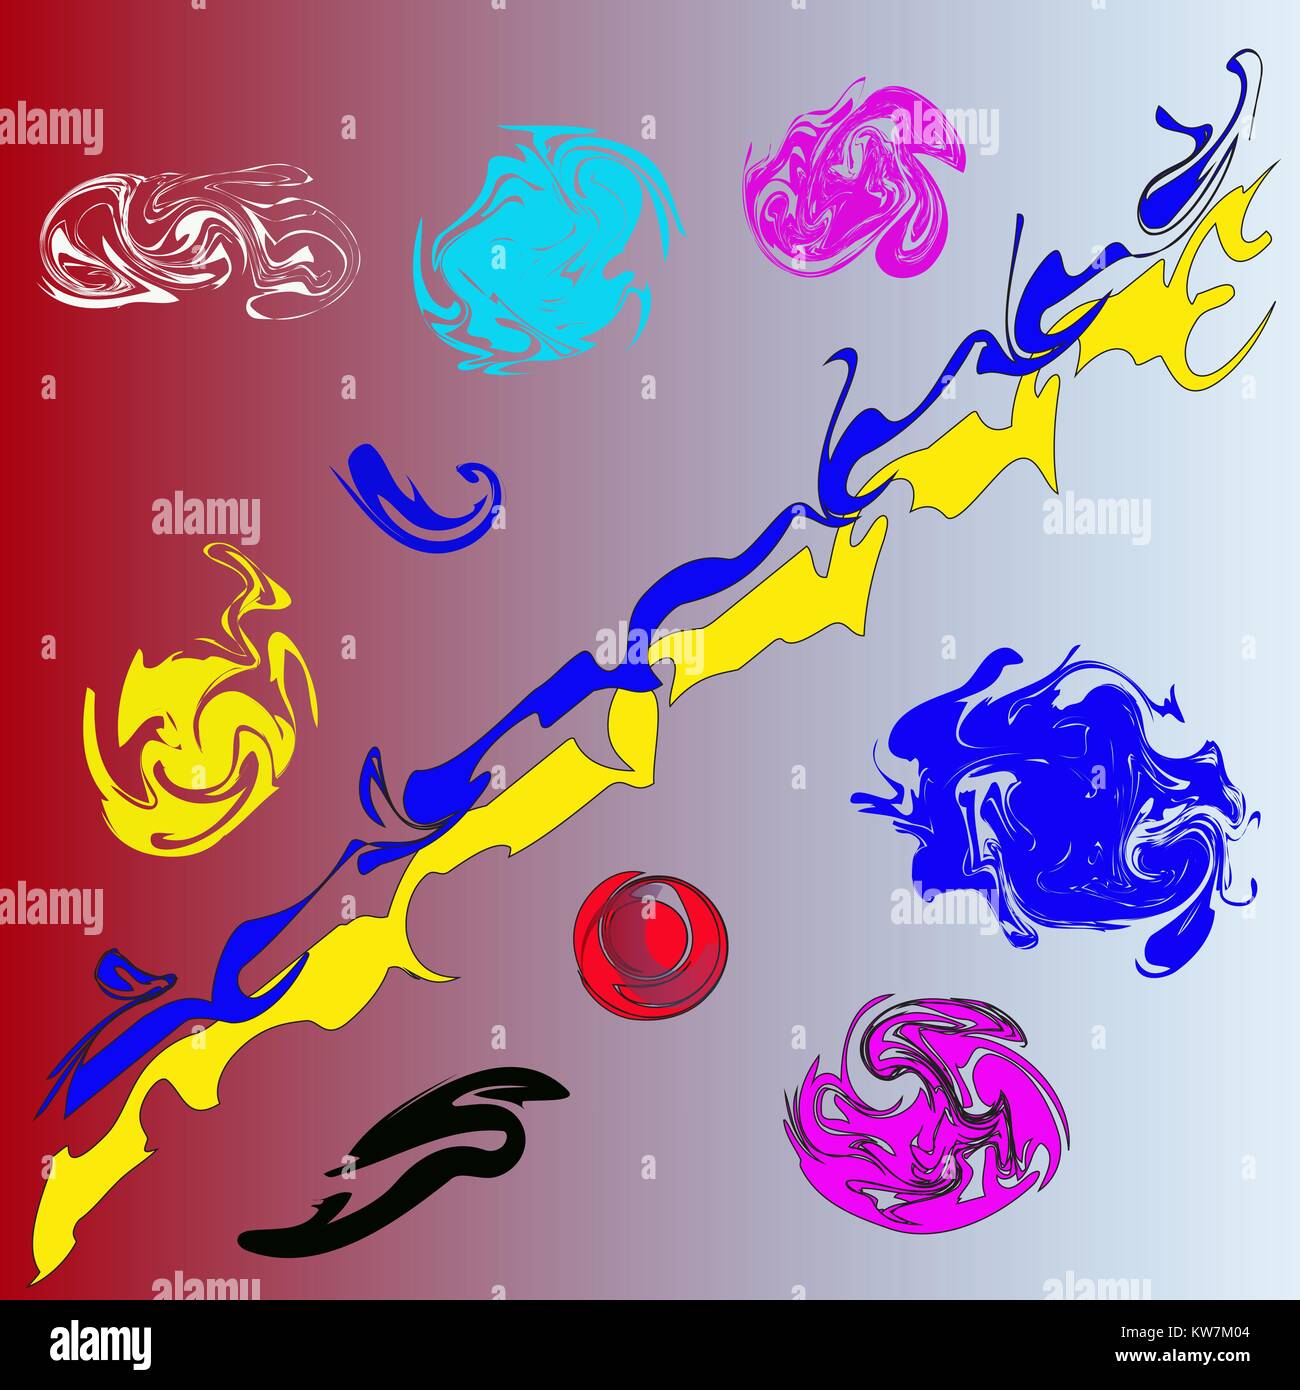 Modelli astratti di vari colori di forma arbitraria. Illustrazione Vettoriale